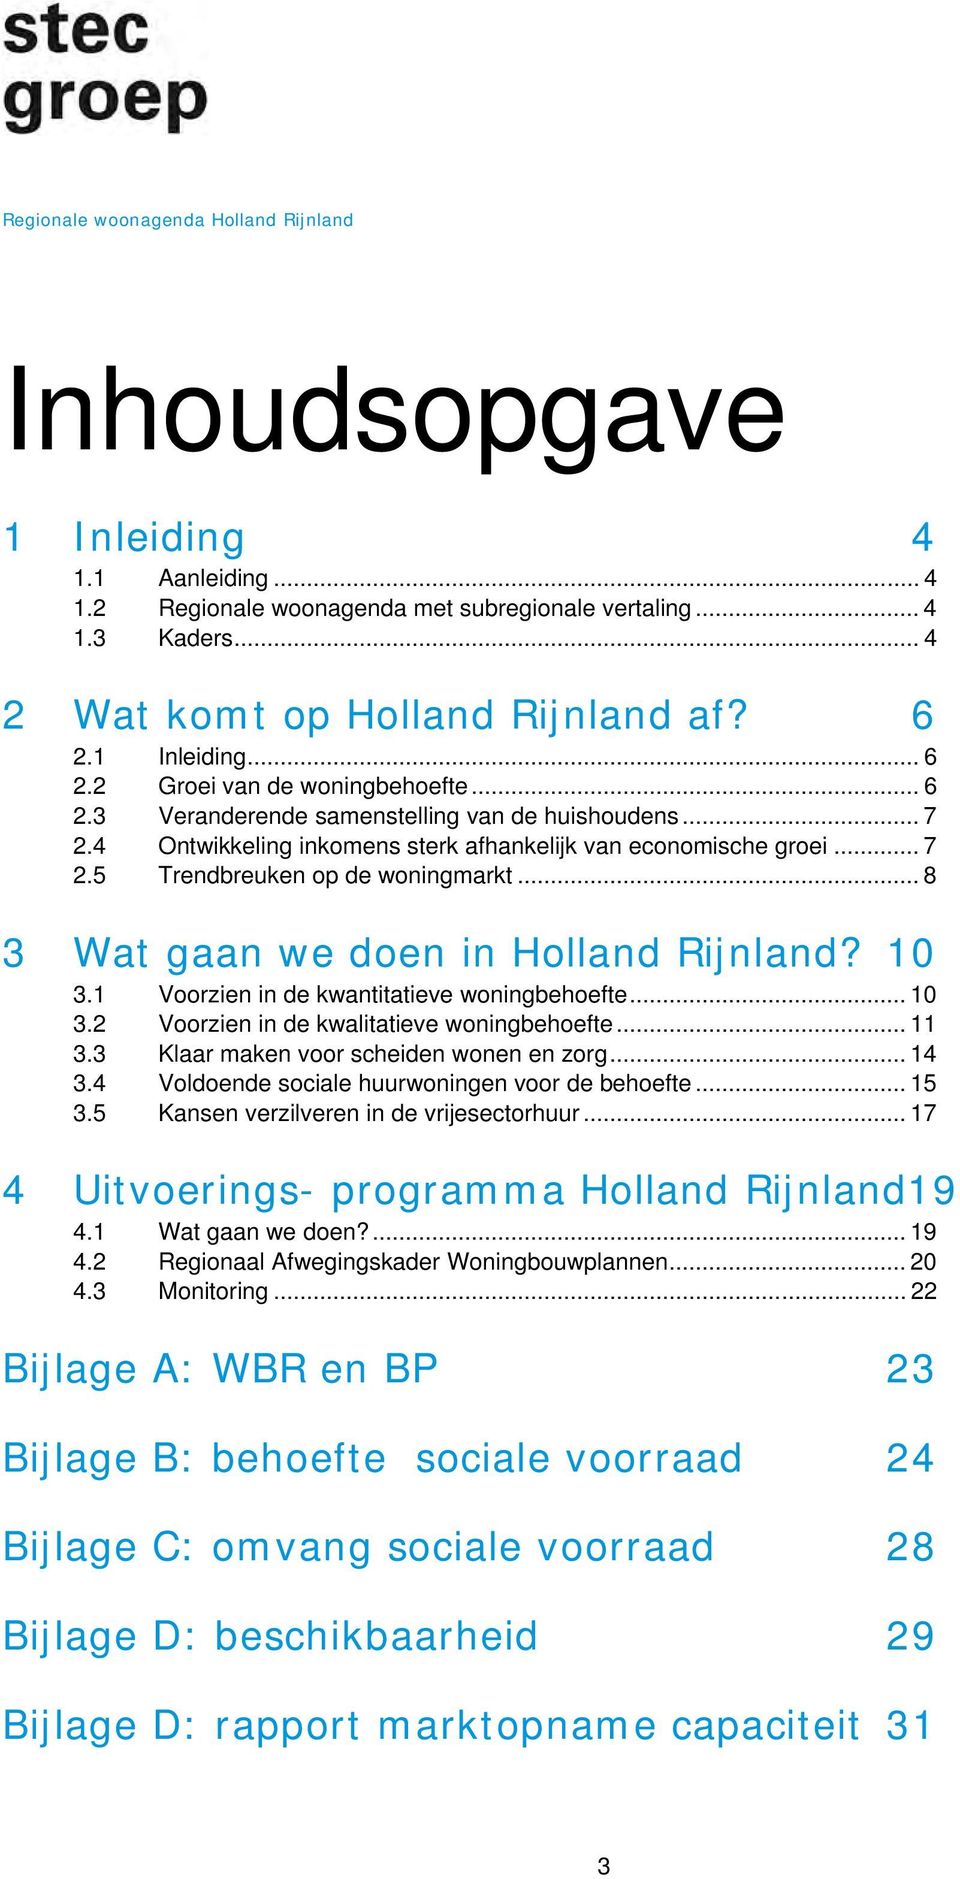 .. 8 3 Wat gaan we doen in Holland Rijnland? 10 3.1 Voorzien in de kwantitatieve woningbehoefte... 10 3.2 Voorzien in de kwalitatieve woningbehoefte... 11 3.3 Klaar maken voor scheiden wonen en zorg.